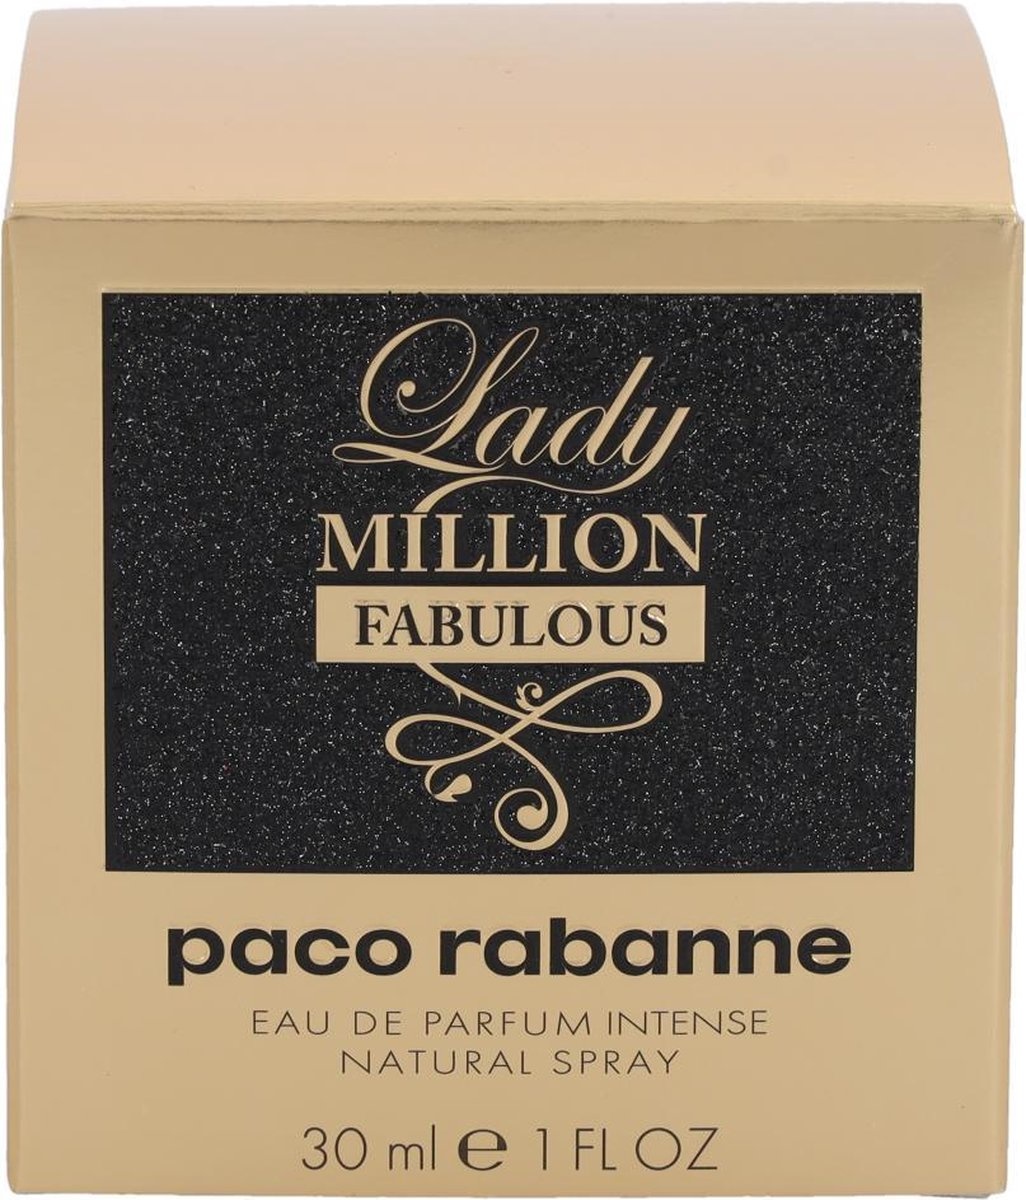 Paco Rabanne Lady Million Fabulous - Women's Eau de Parfum - 30 ml